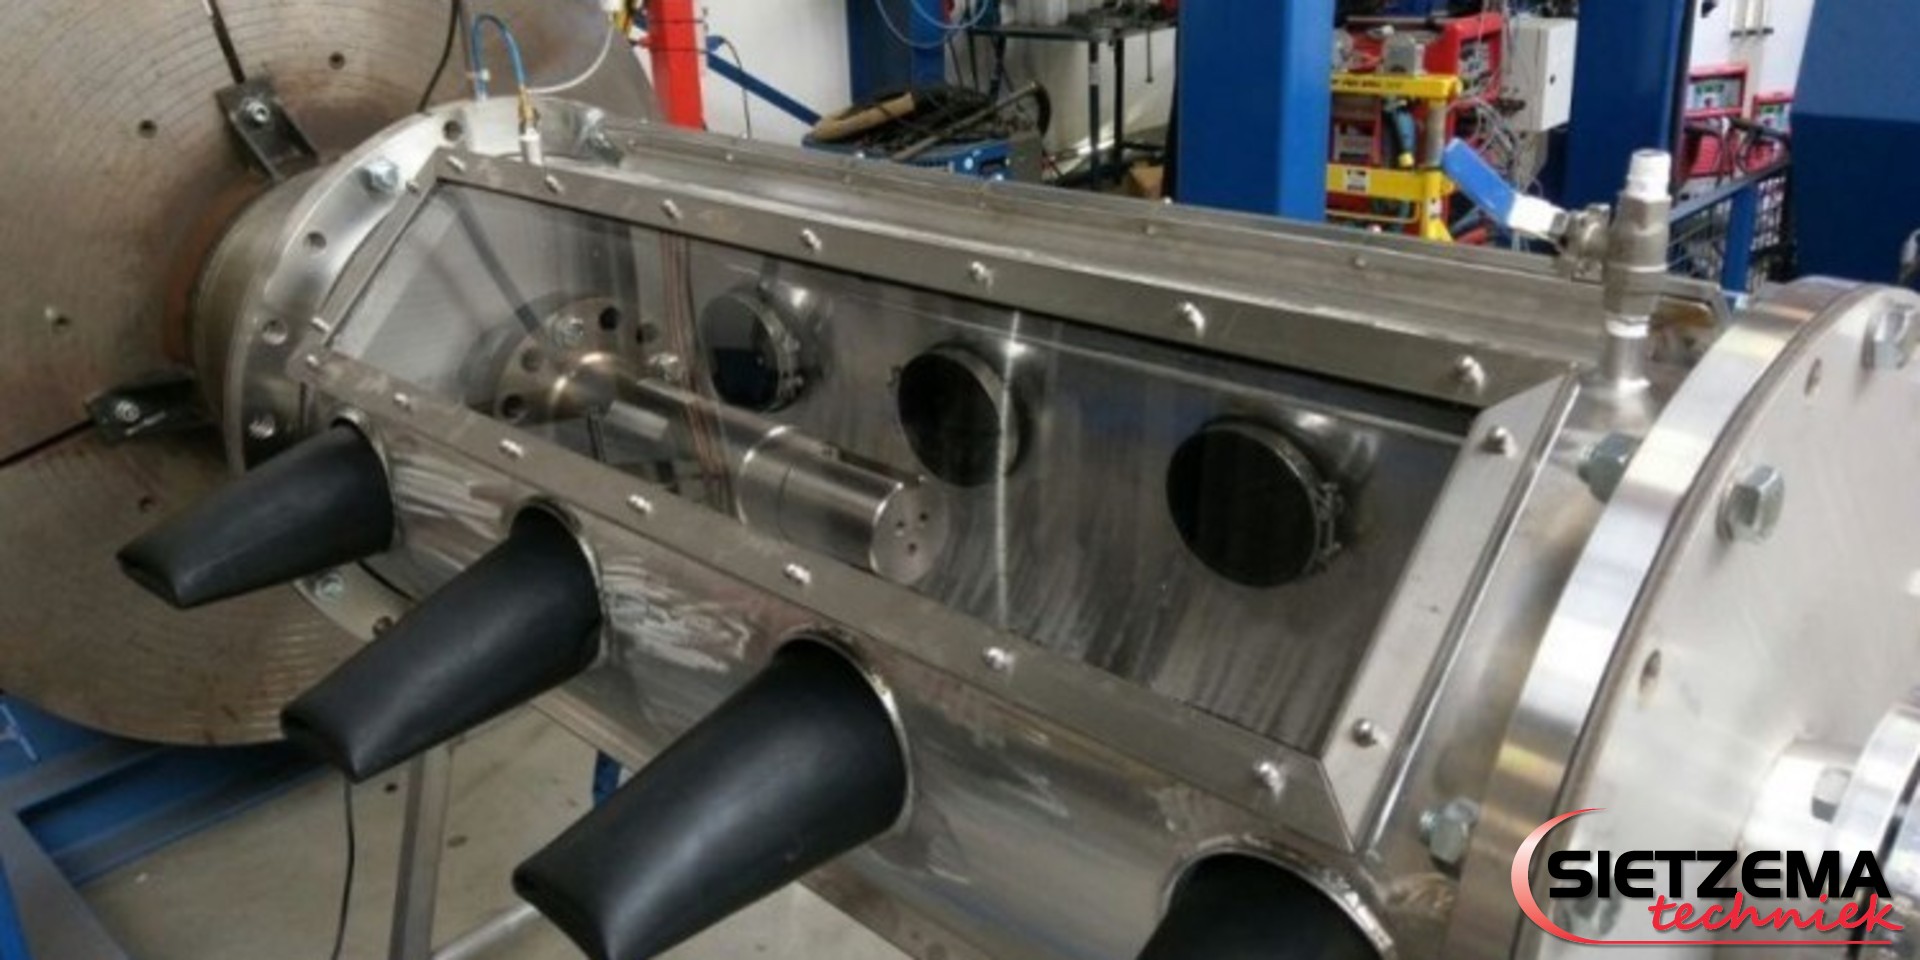 Vacuum cladding of titanium shaft in a welding enclosure